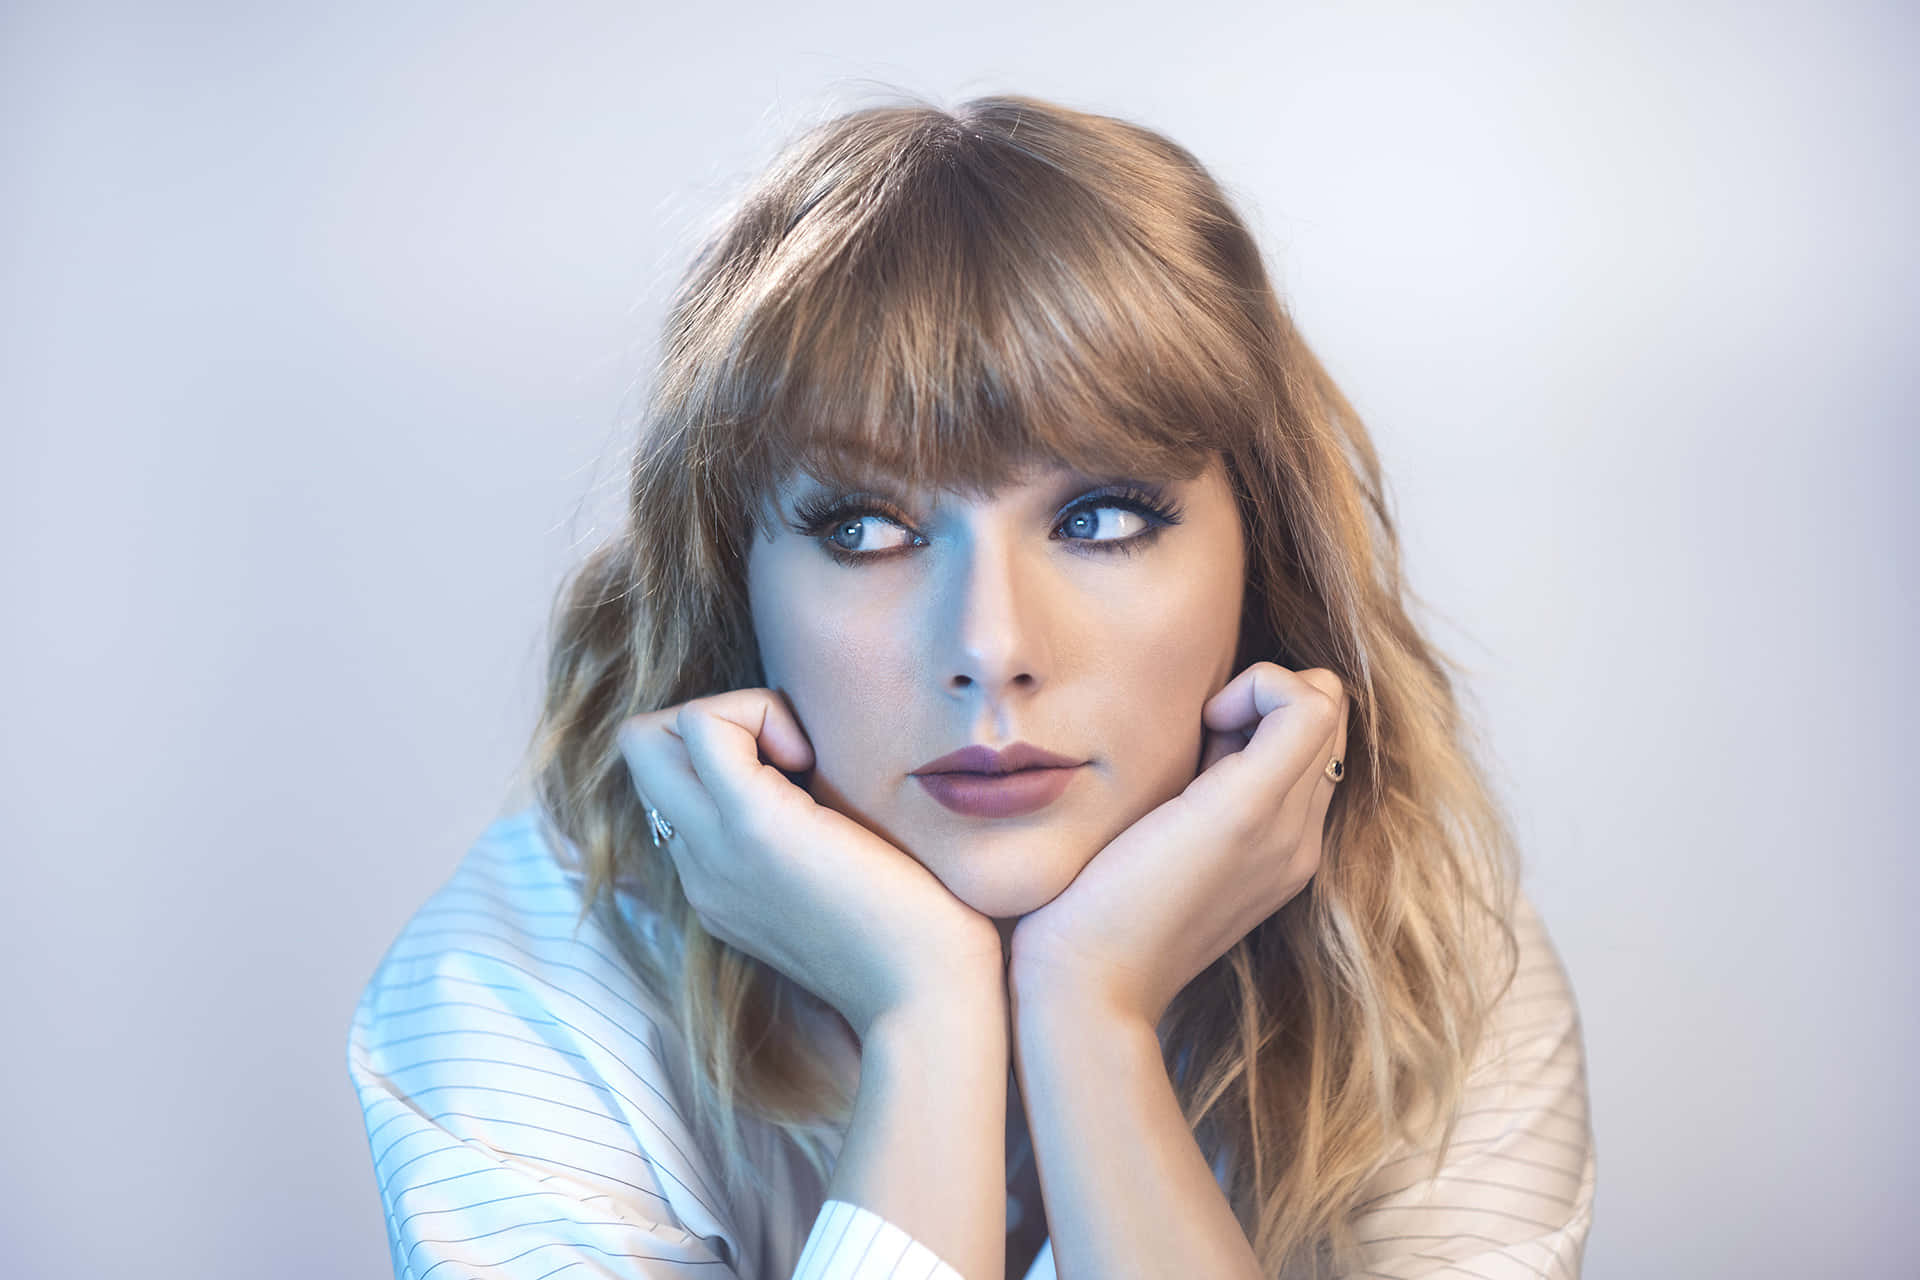 Taylor Swift Midnights Album Background